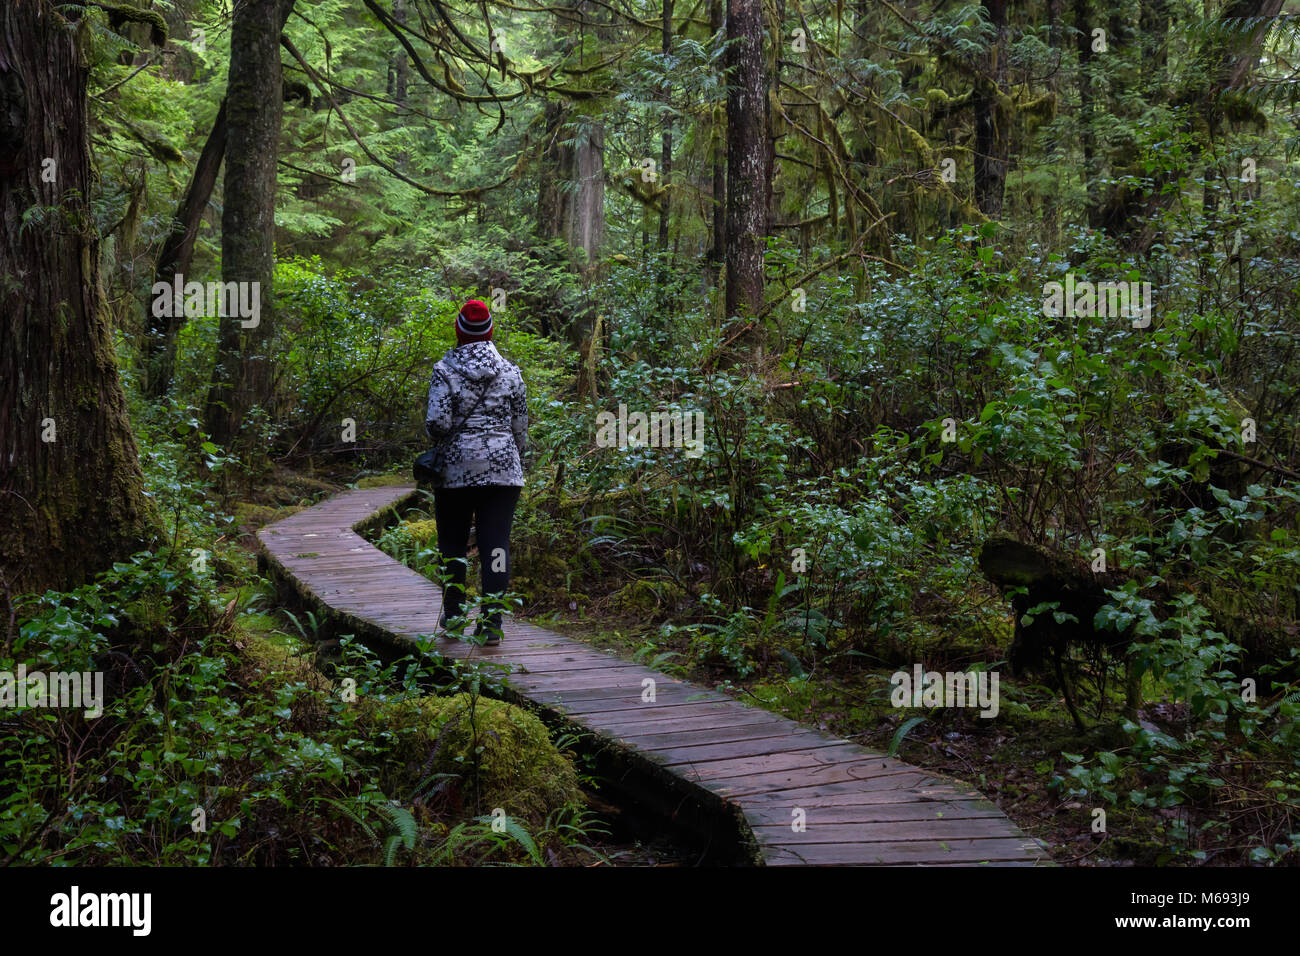 Chica que llevaba una chaqueta de color rojo brillante es el caminar de los hermosos bosques durante una animada mañana de invierno. Tomada en Ucluelet, Isla de Vancouver, BC, Canadá. Foto de stock